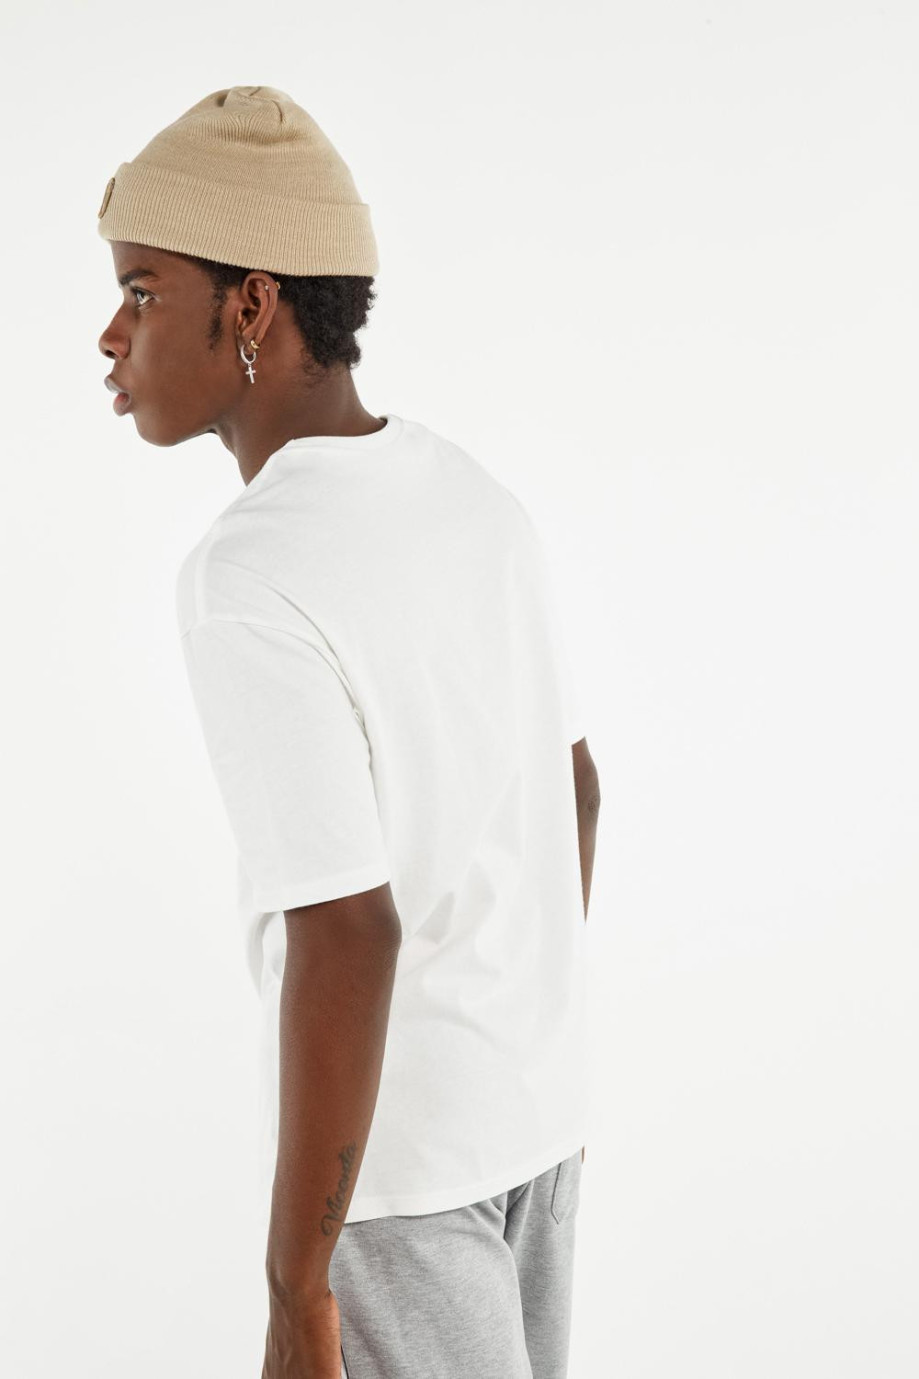 Camiseta manga corta crema clara en algodón con cuello redondo en rib